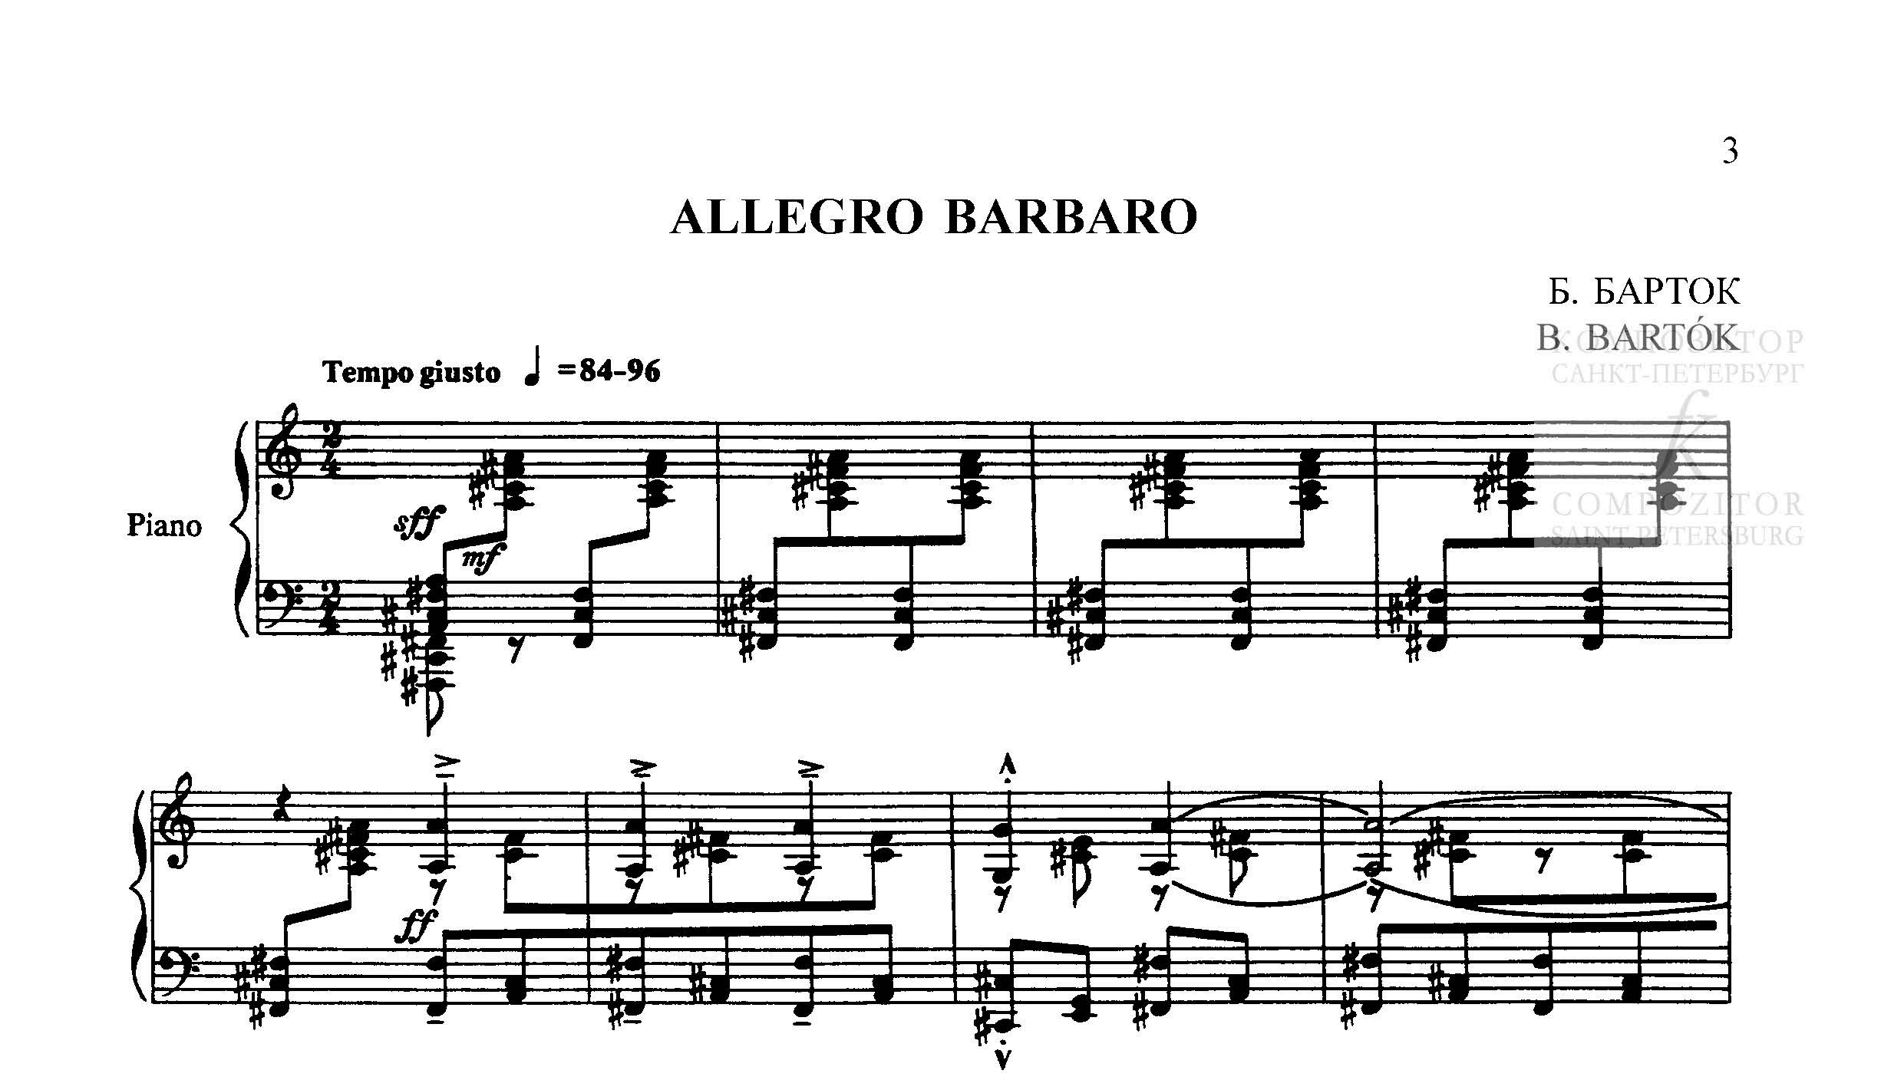 Барток Бела. Allegro barbaro. Пьеса для фортепиано из сборника "Избранные пьесы для фортепиано"